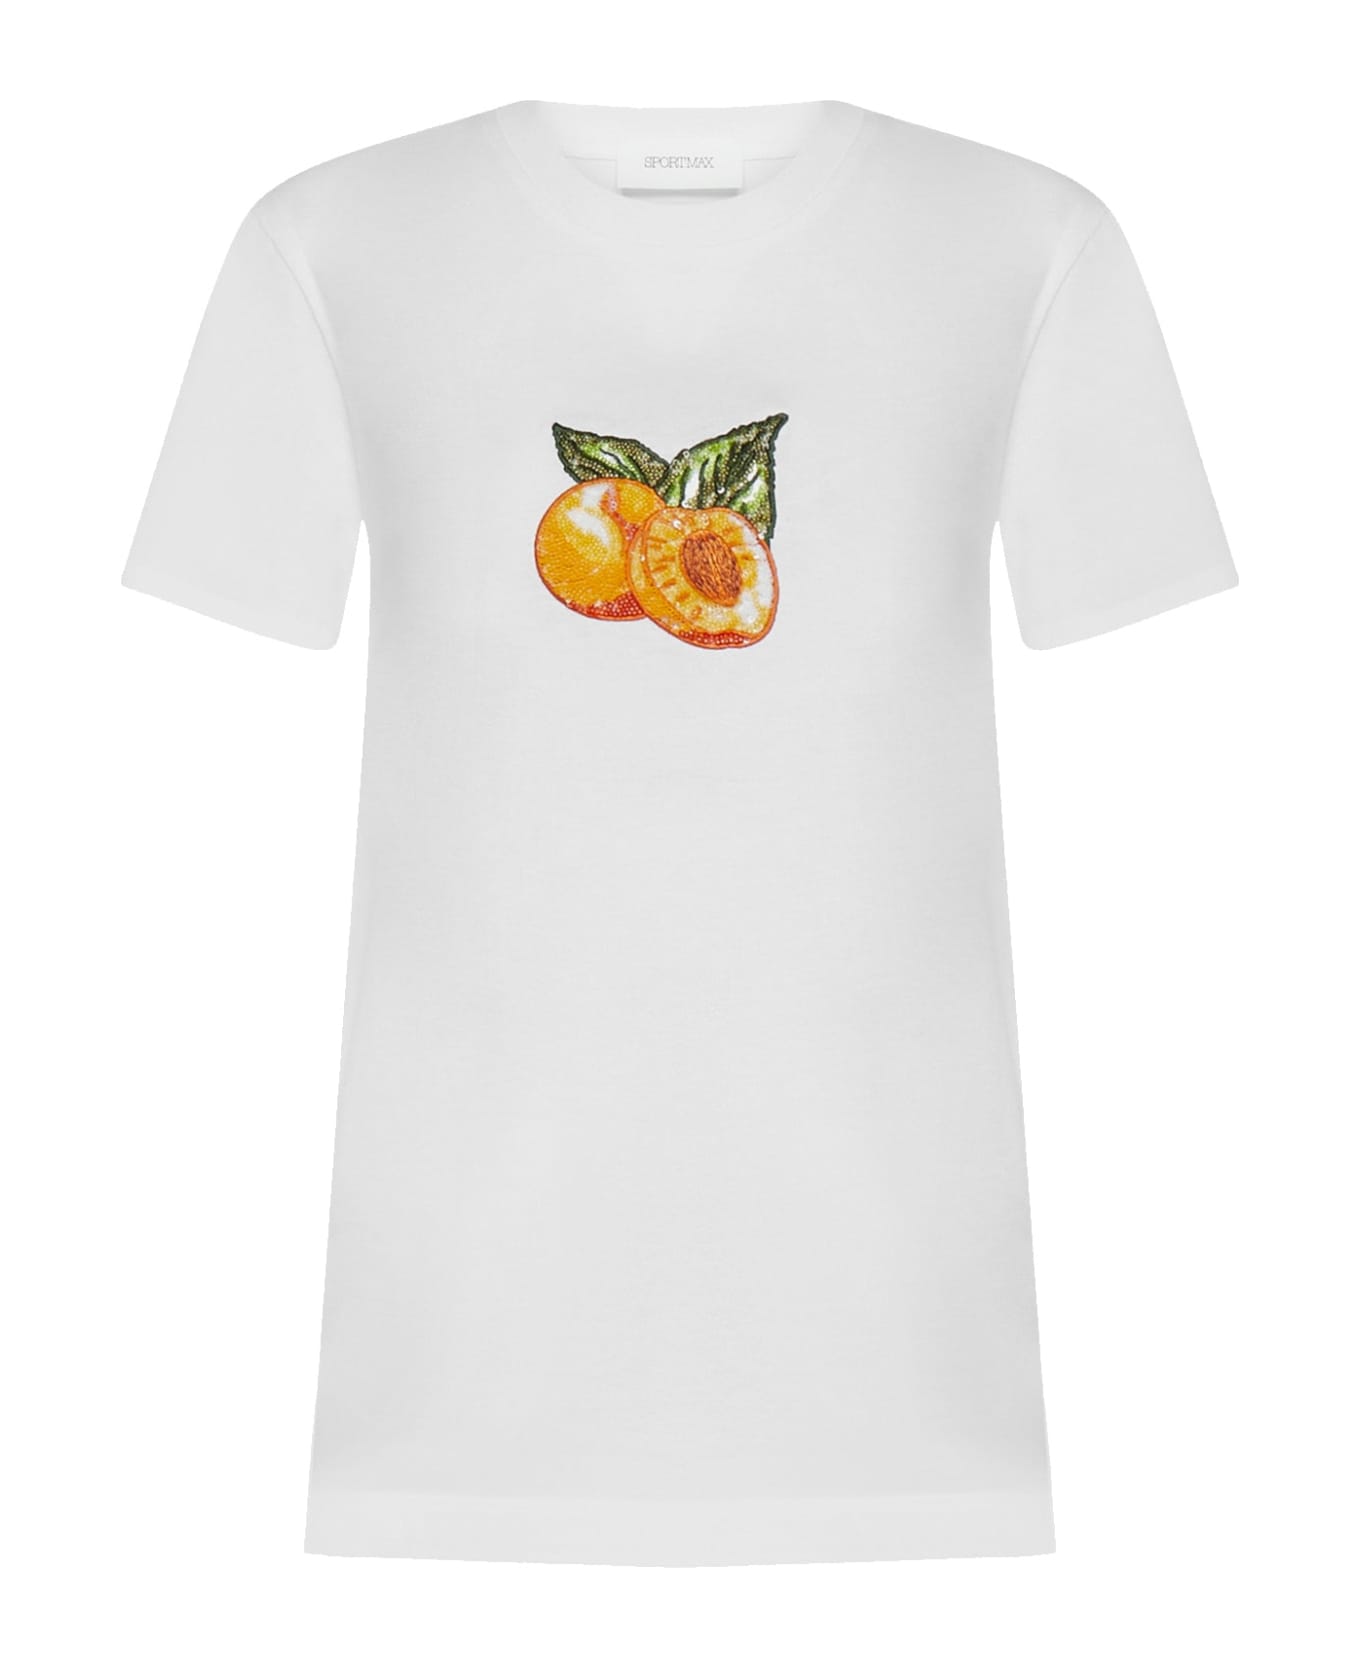 SportMax Zurlo T-shirt - White